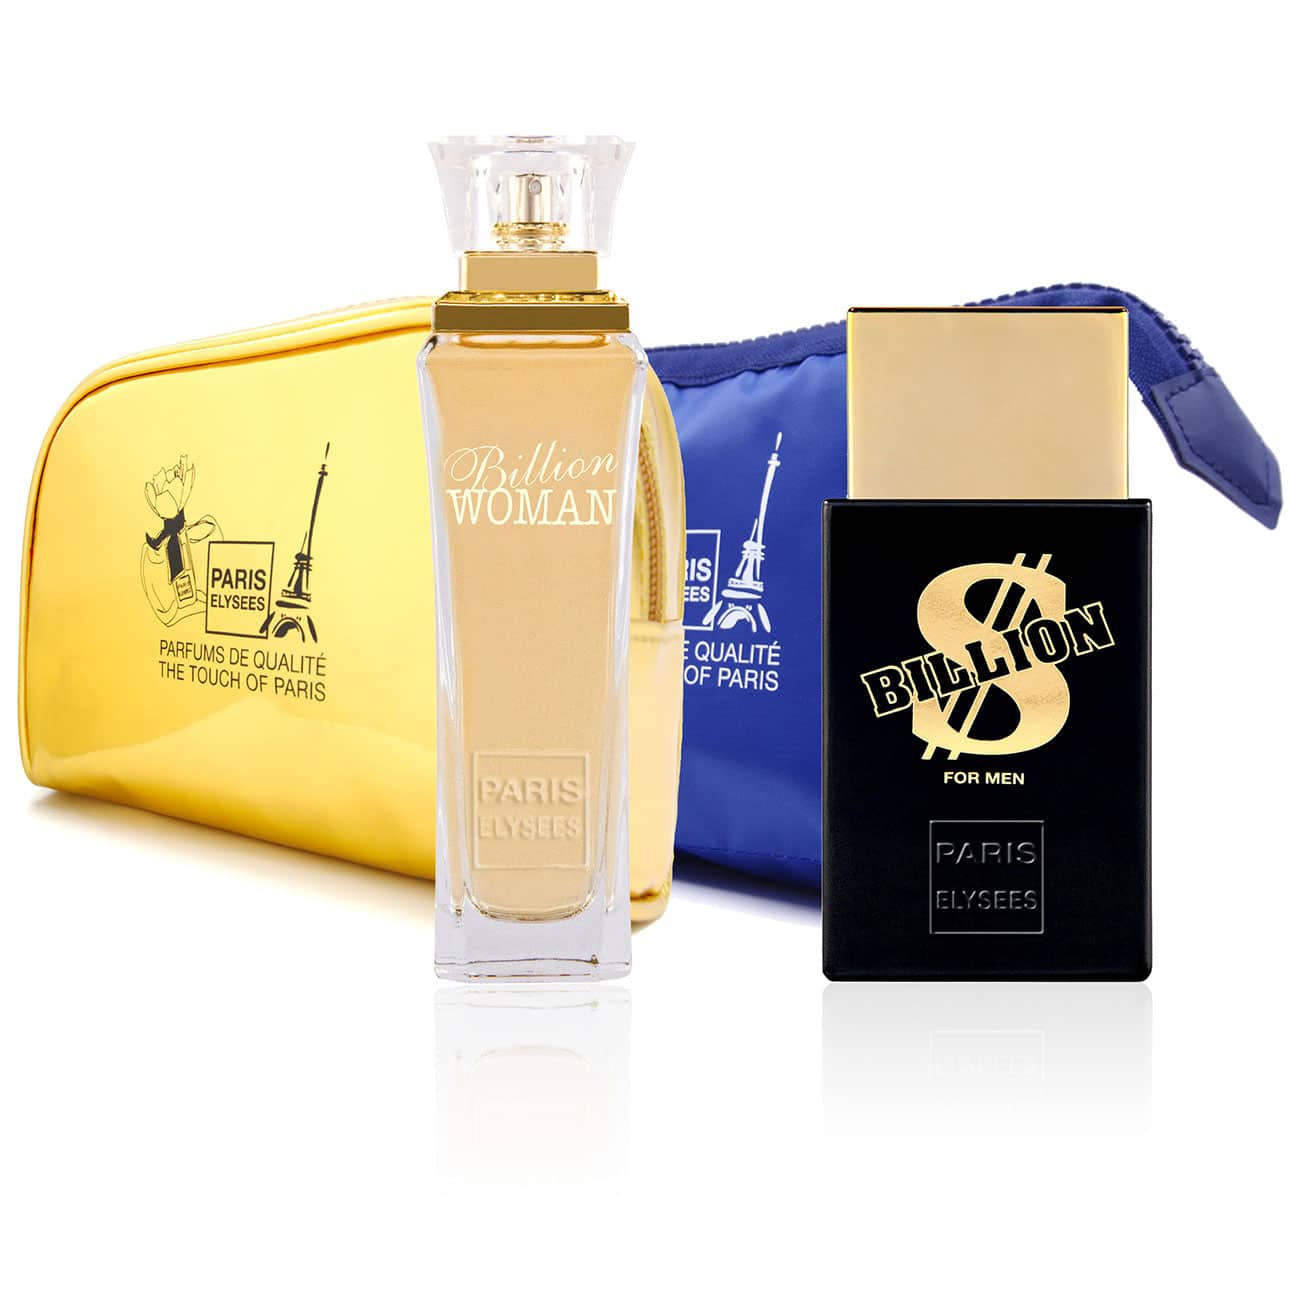 Duo de Parfums Billion Kisses pour Hommes & Femmes | Paris Elysees Parfums